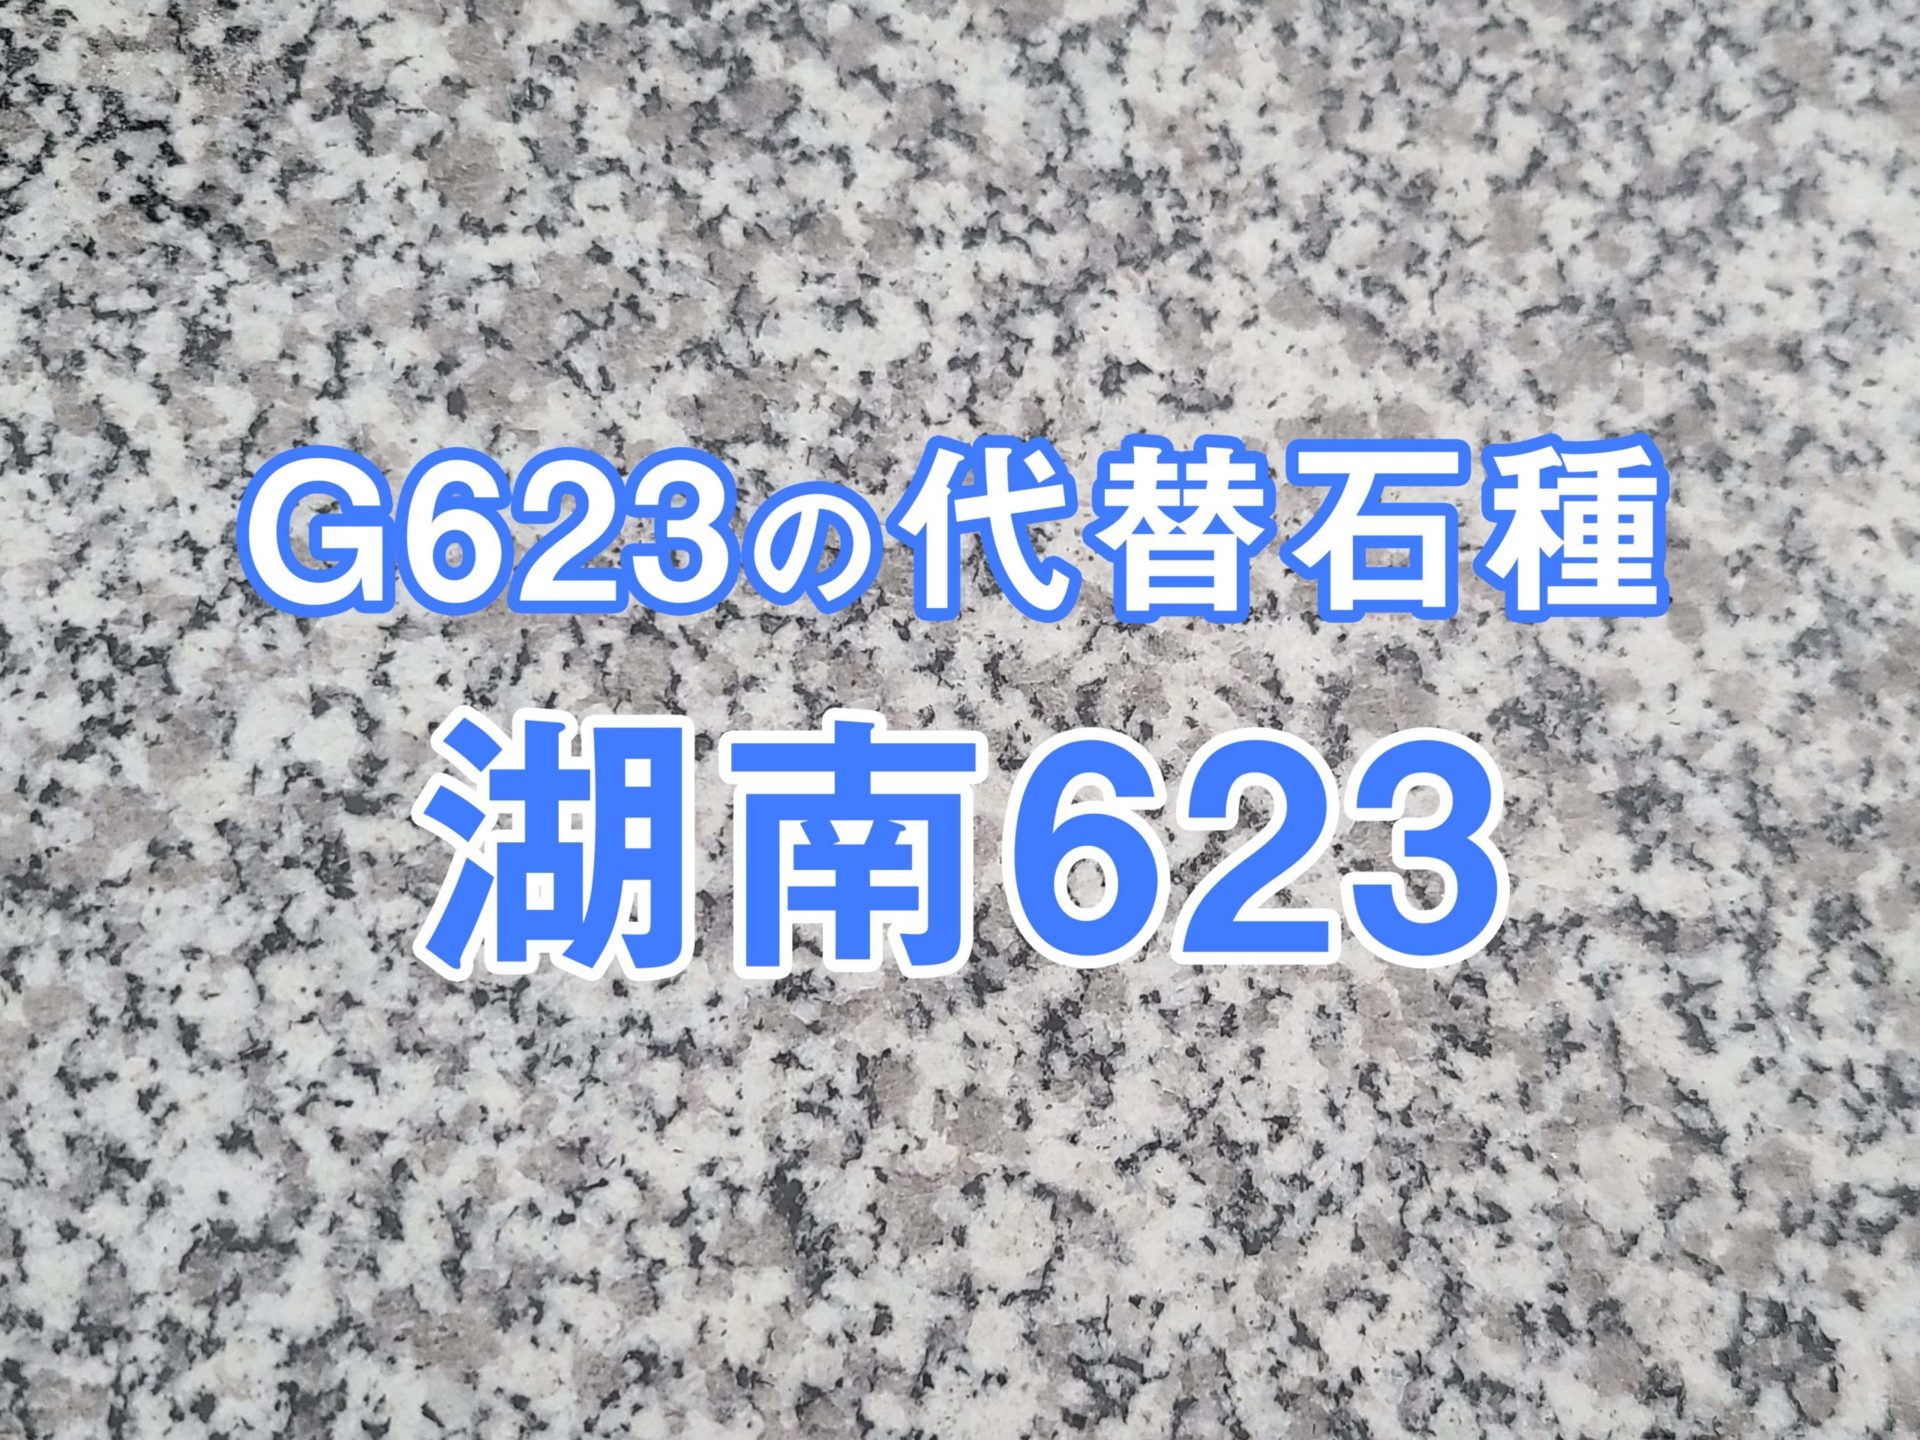 G623の代替石種湖南623